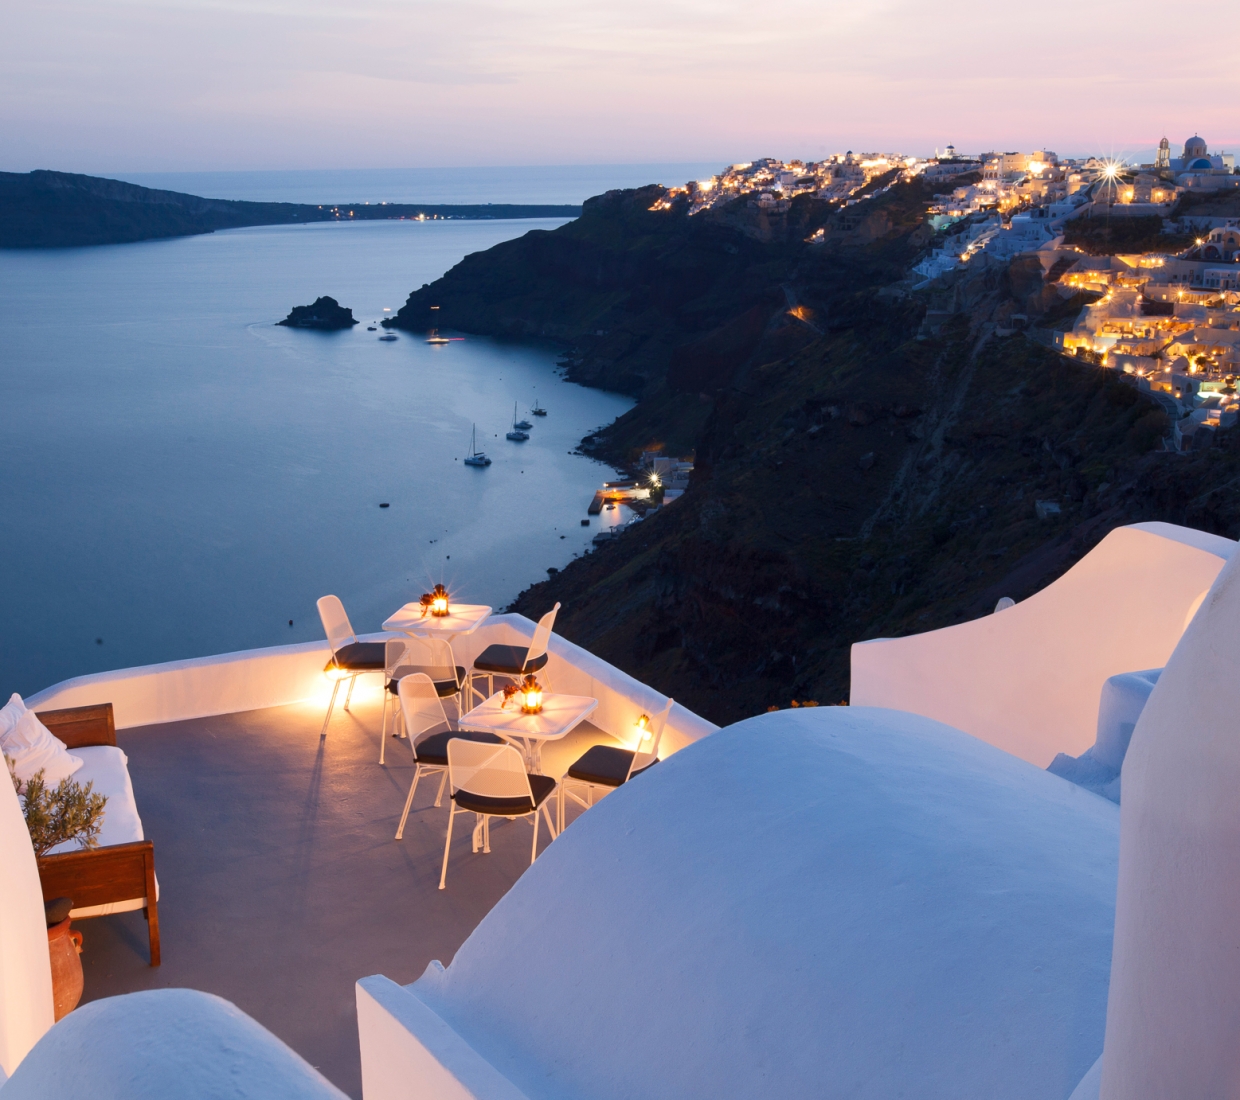 Seleção dos melhores e mais bonitos hotéis e casas de férias em Santorini